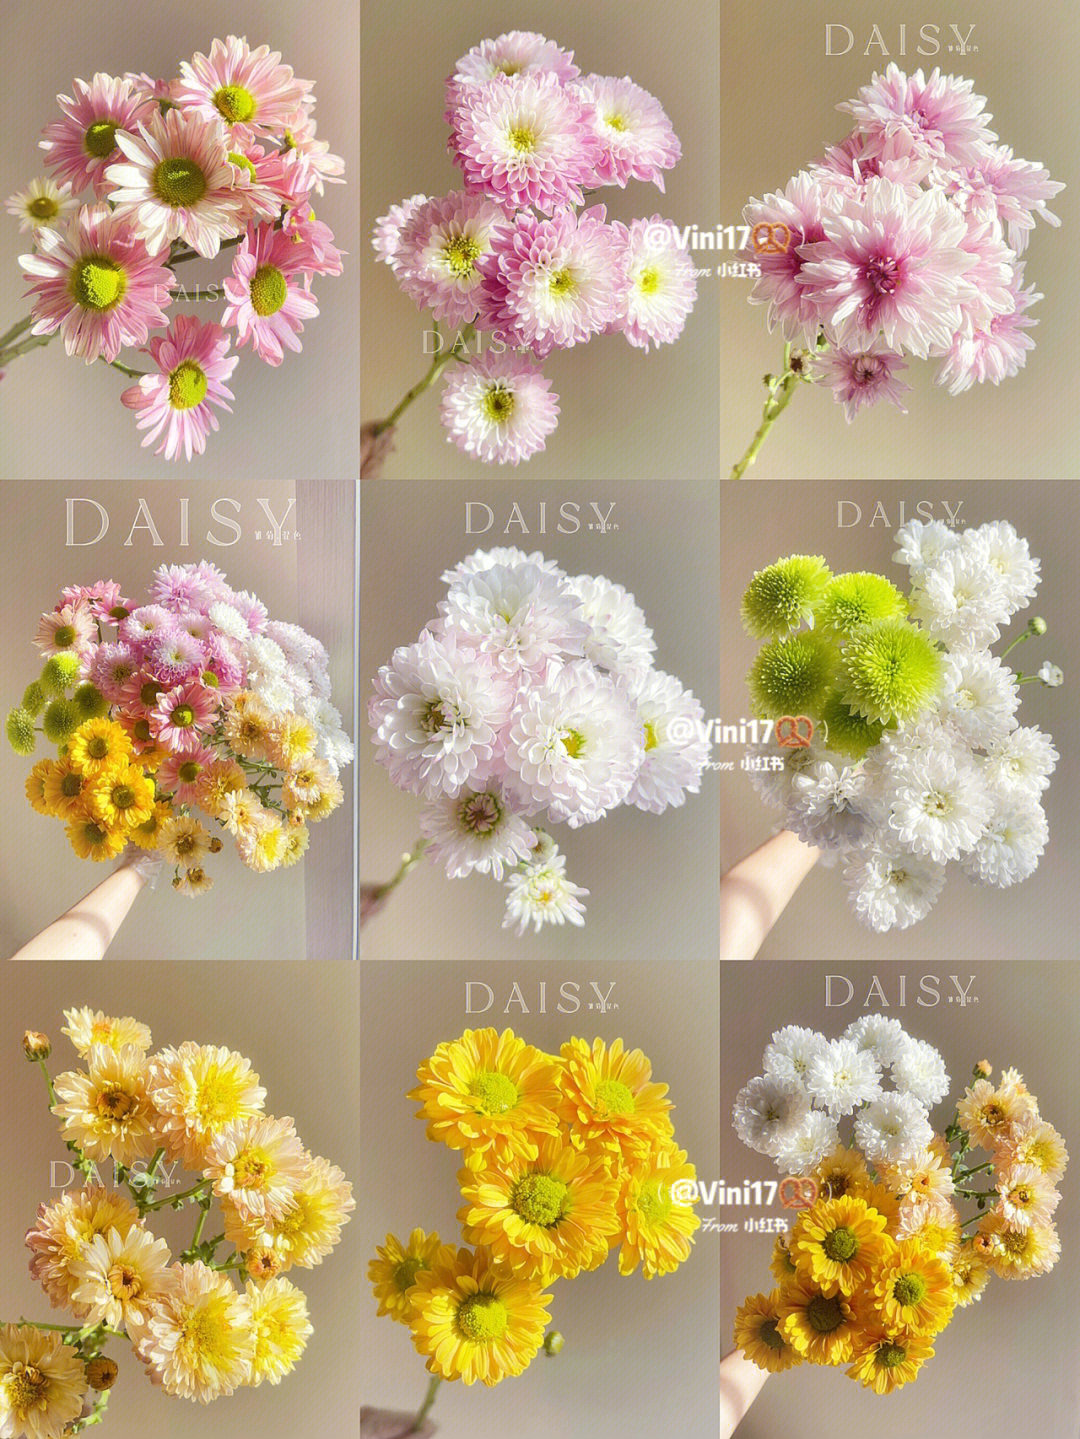 小雏菊的品种大全图片